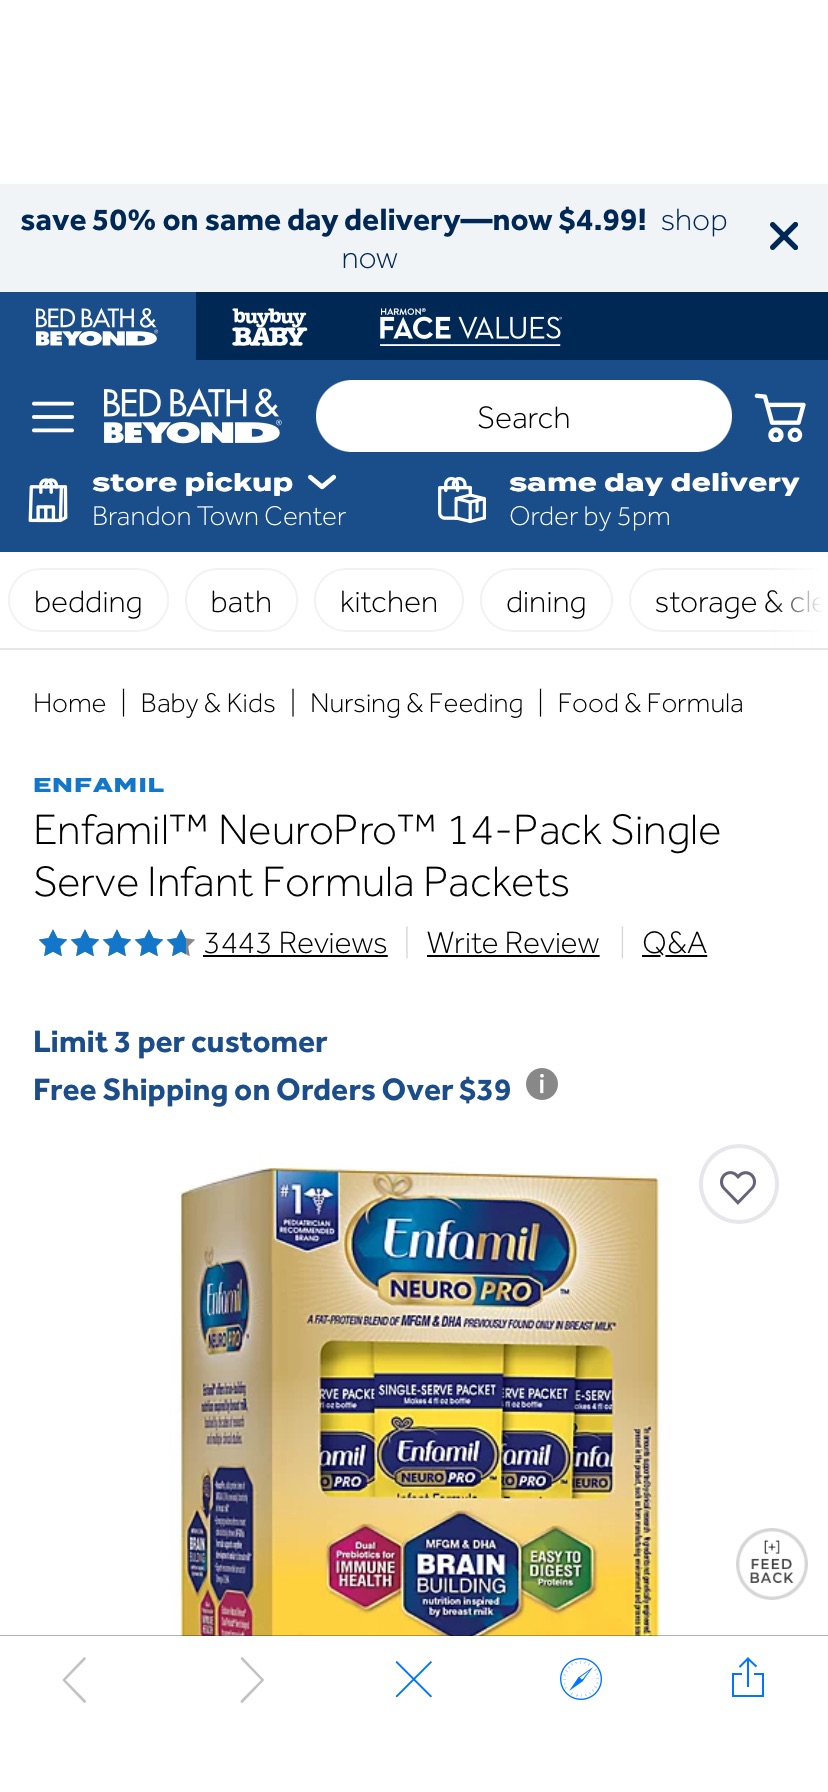 Enfamil™ NeuroPro™ 14-Pack Single Serve Infant Formula Packets | Bed Bath & Beyond奶粉